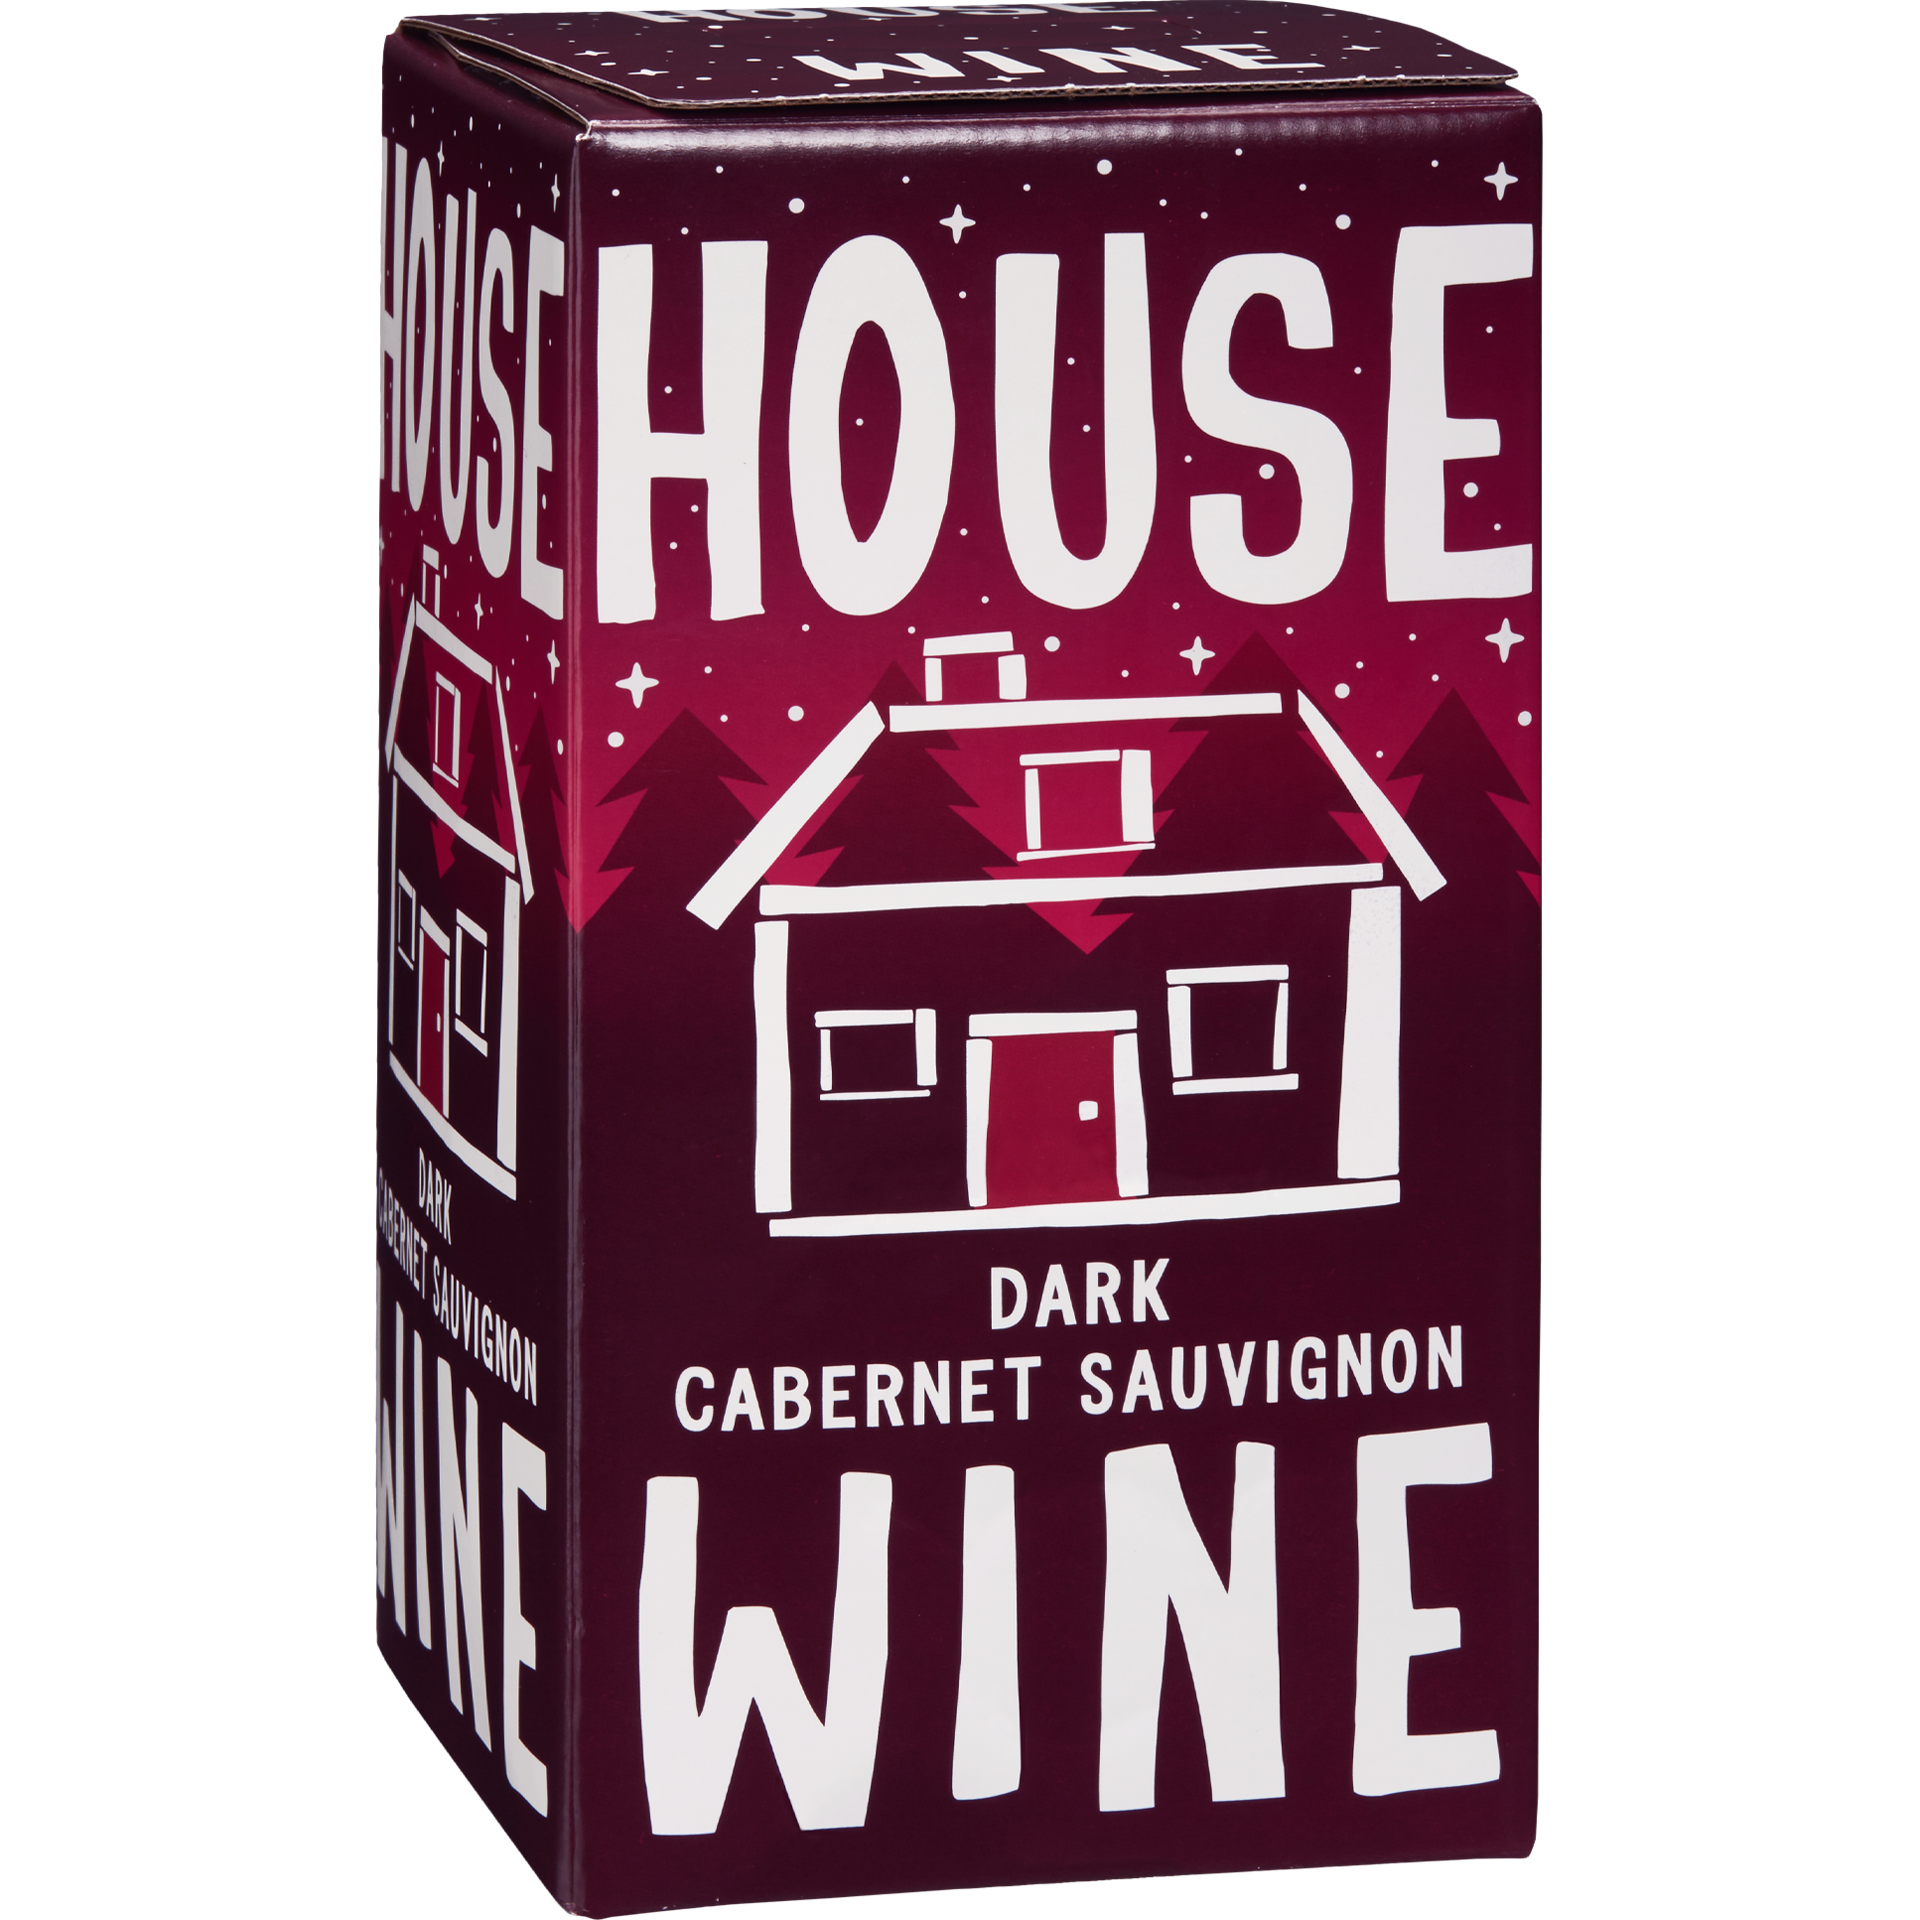 Dark Cabernet Sauvignon Box